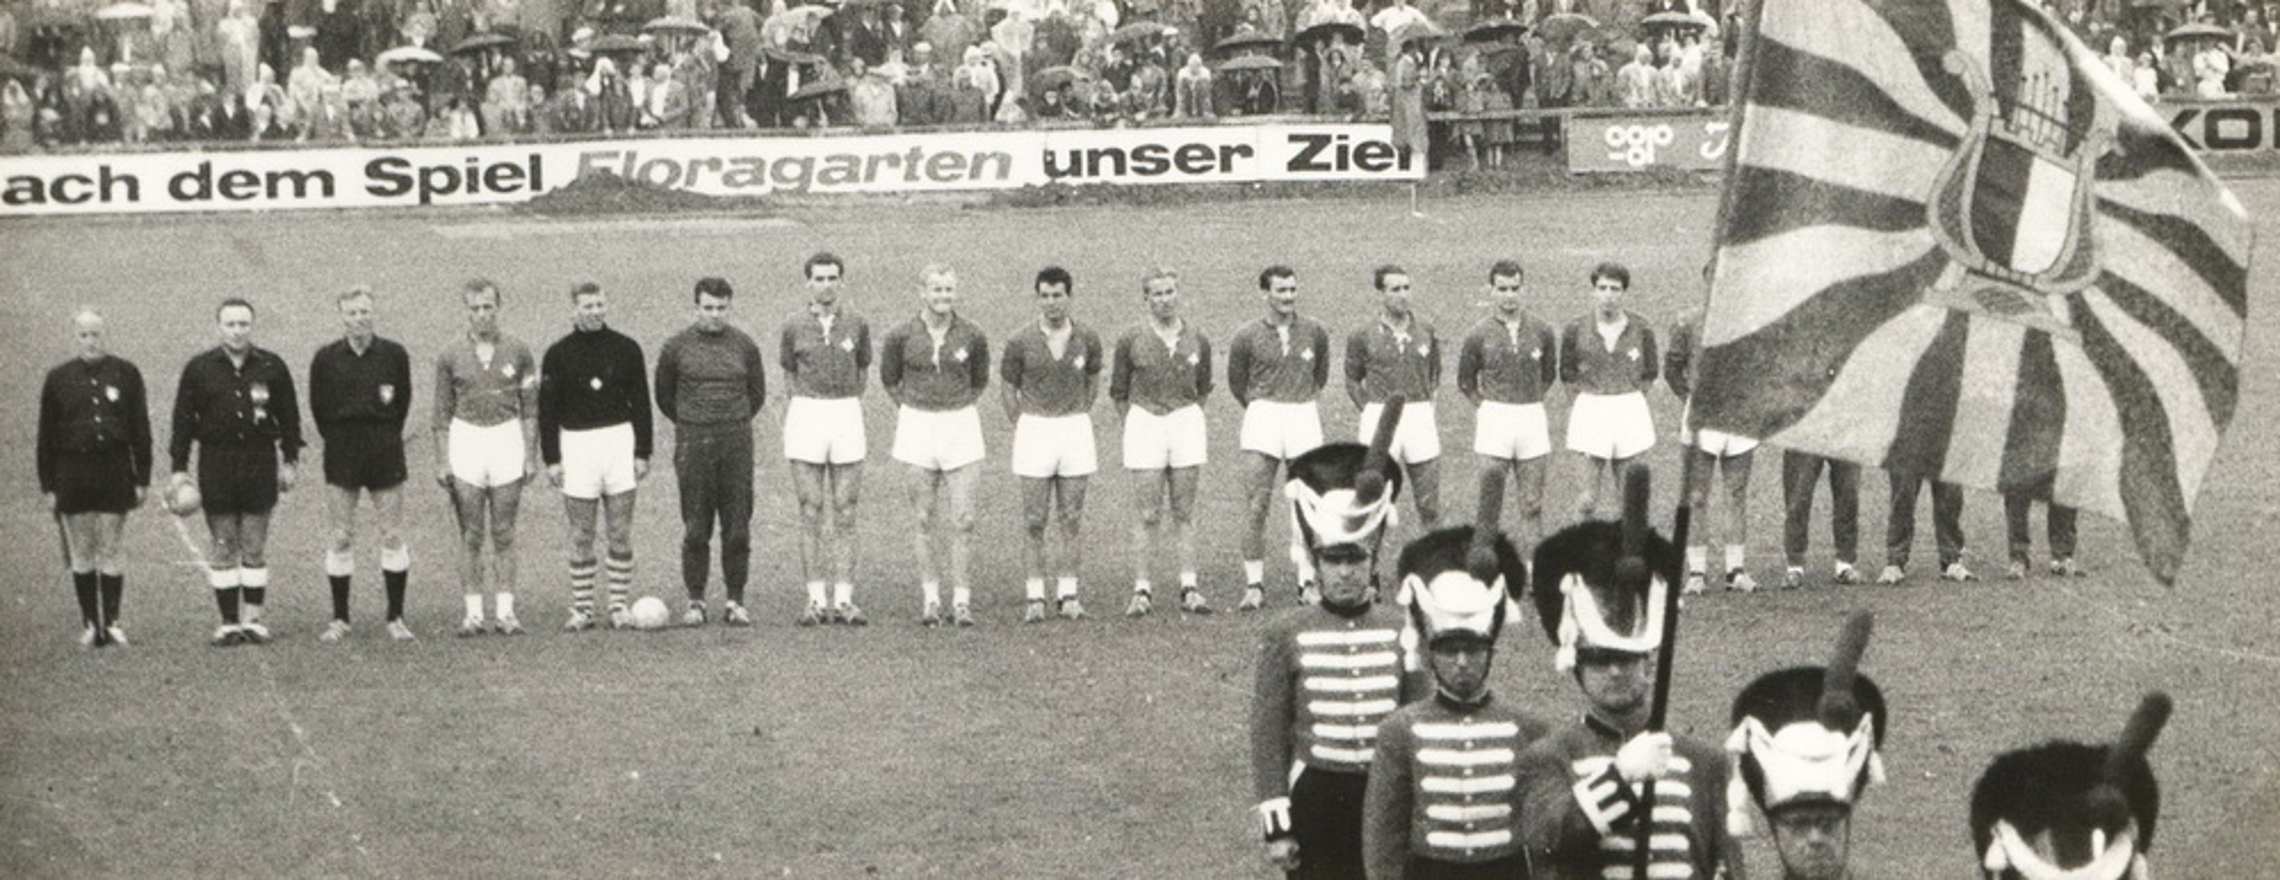 30.6.1963 Schweiz - Deutschland 11:7 (4:3) Luzern Allmend, 6000 Zuschauer, Schiedsrichter Brandmeyer, Linz am Eidg. Turnfest